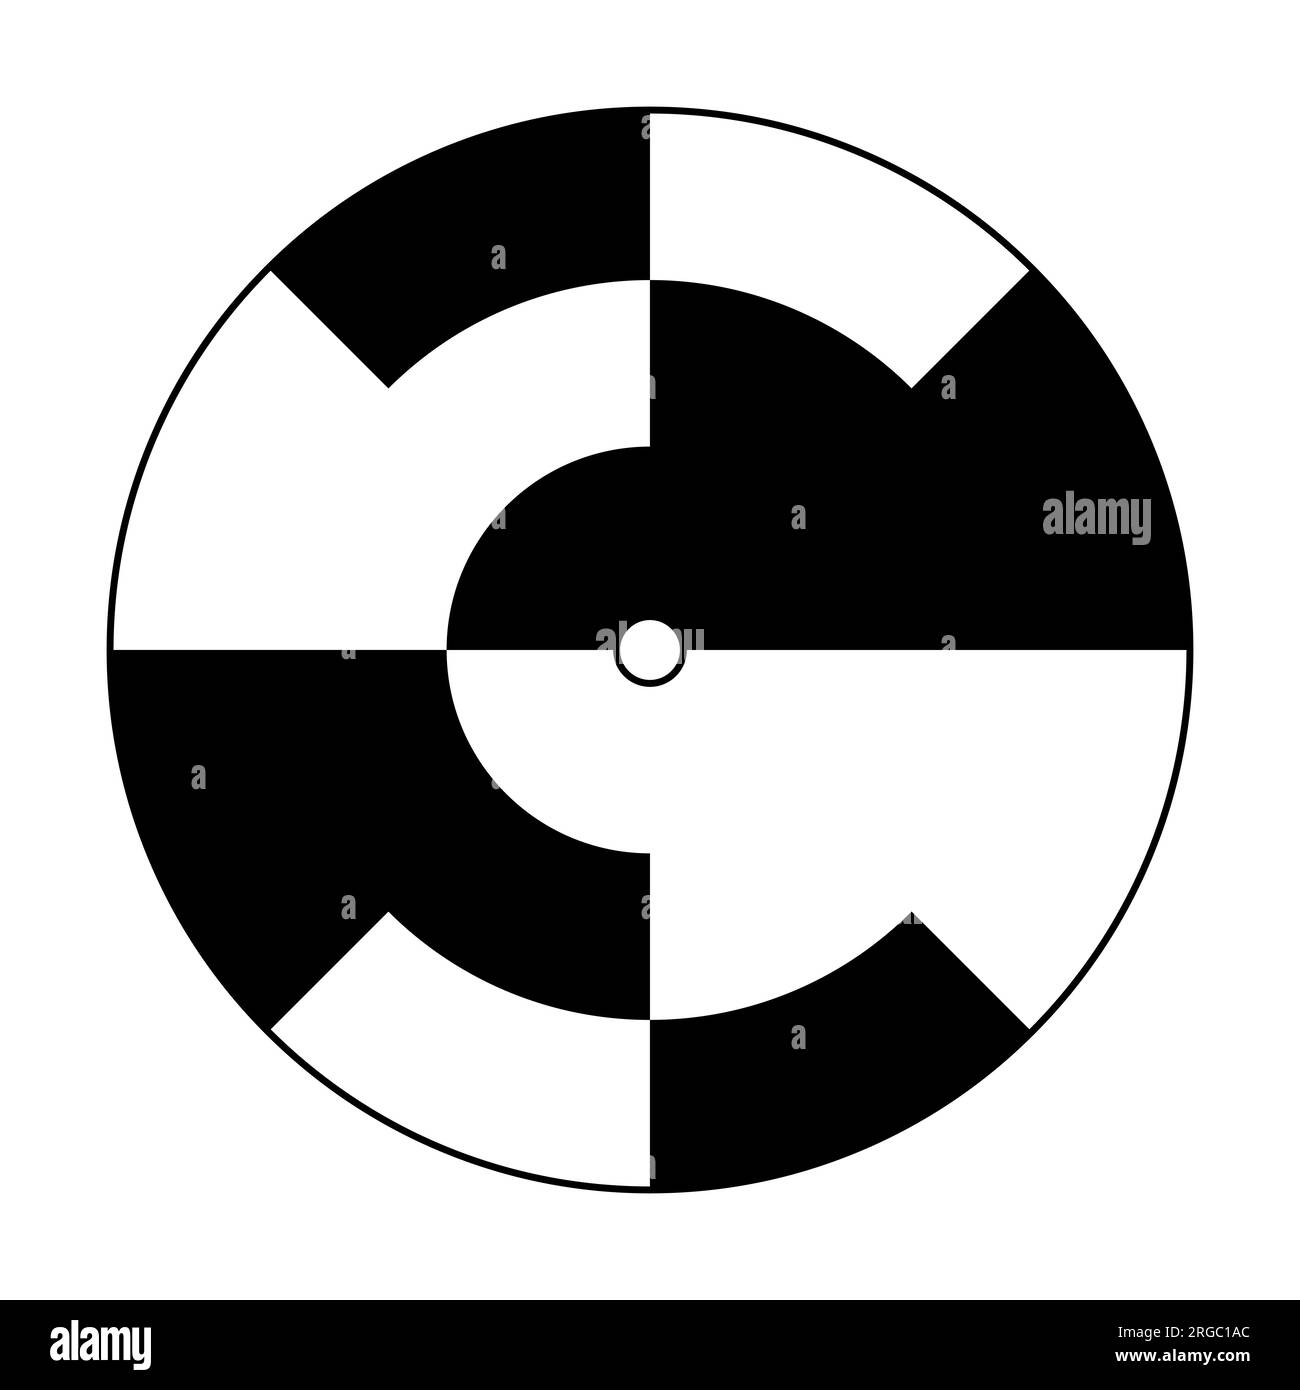 Modello per un disco rotante per trasformare l'intera superficie in grigio. Cerchi con segmenti alternati in bianco e nero. Foto Stock